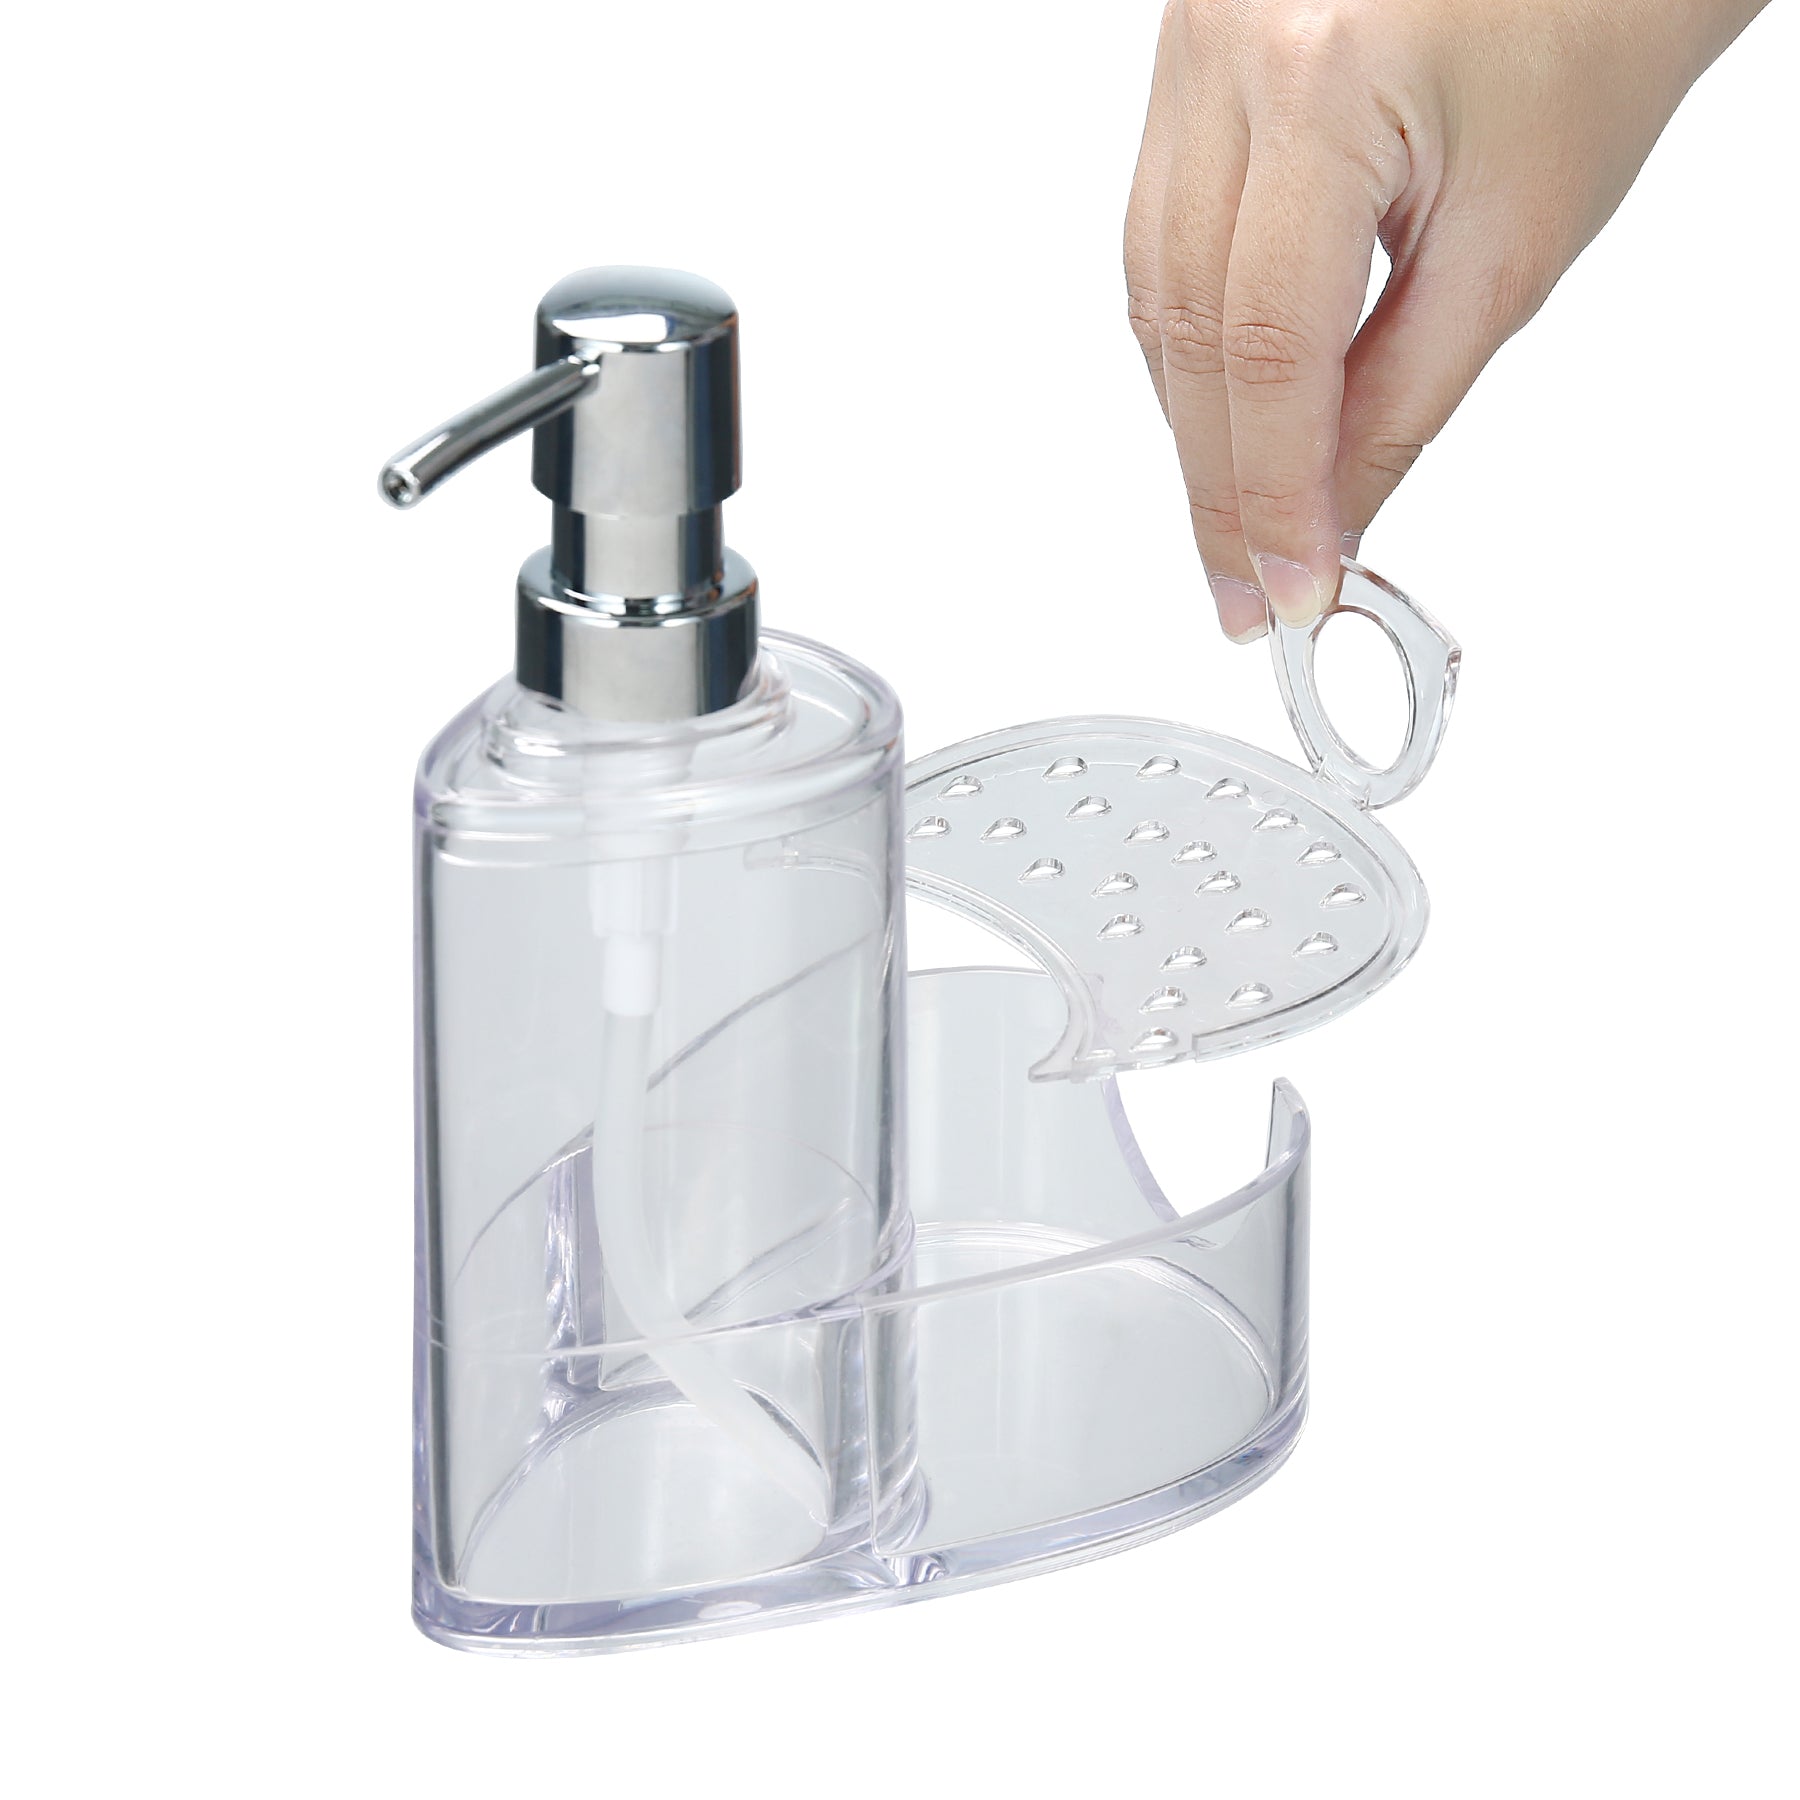 Soap Dispenser & Sponge Holder Combo - Felli Official